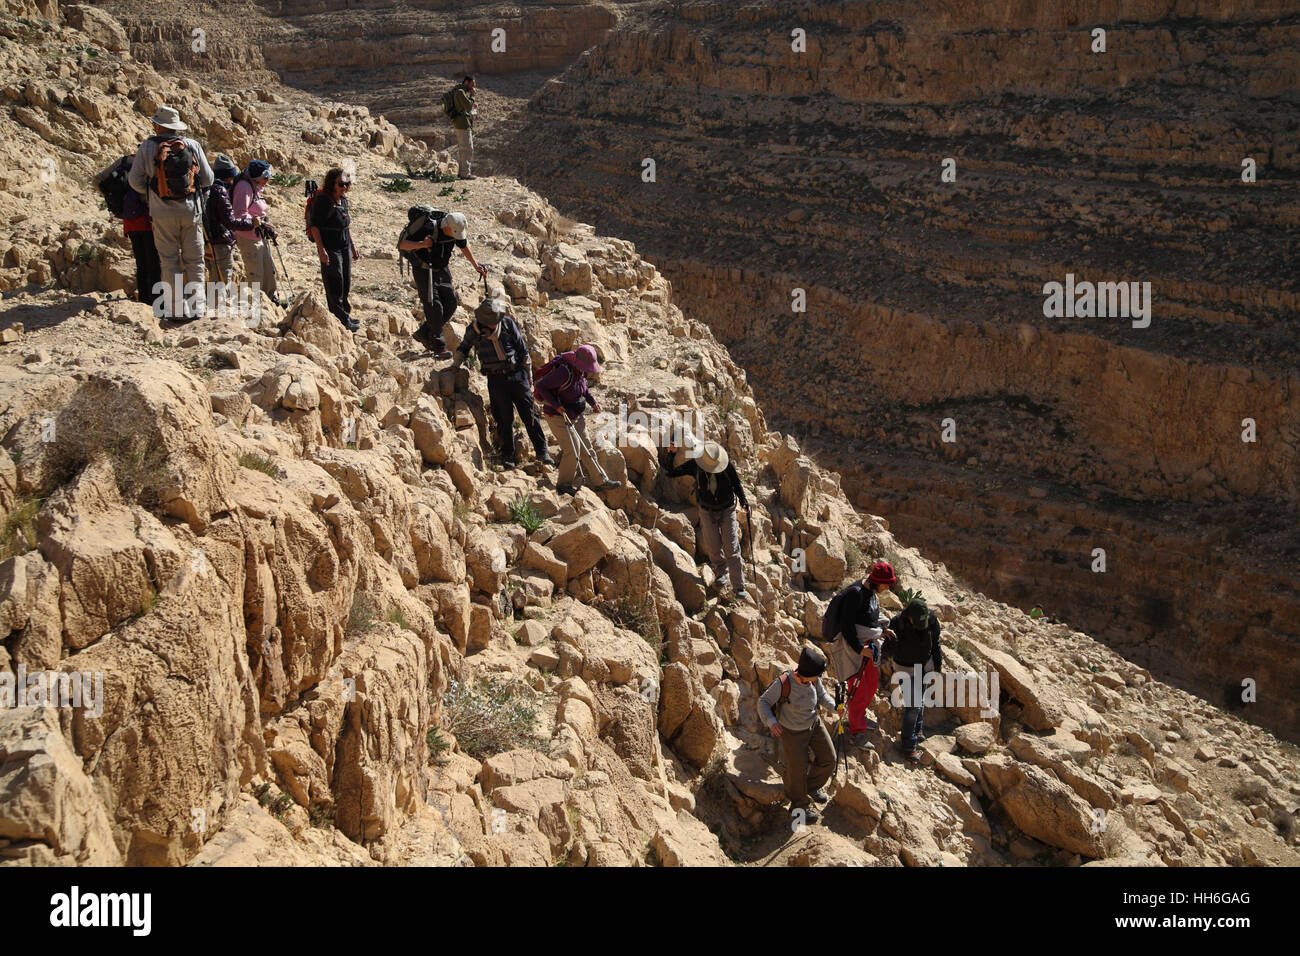 Senior citizen les randonneurs sont soigneusement la descente d'une pente raide dans le canyon profond de Nahal ou Nahal Kina, le désert de Judée. Banque D'Images